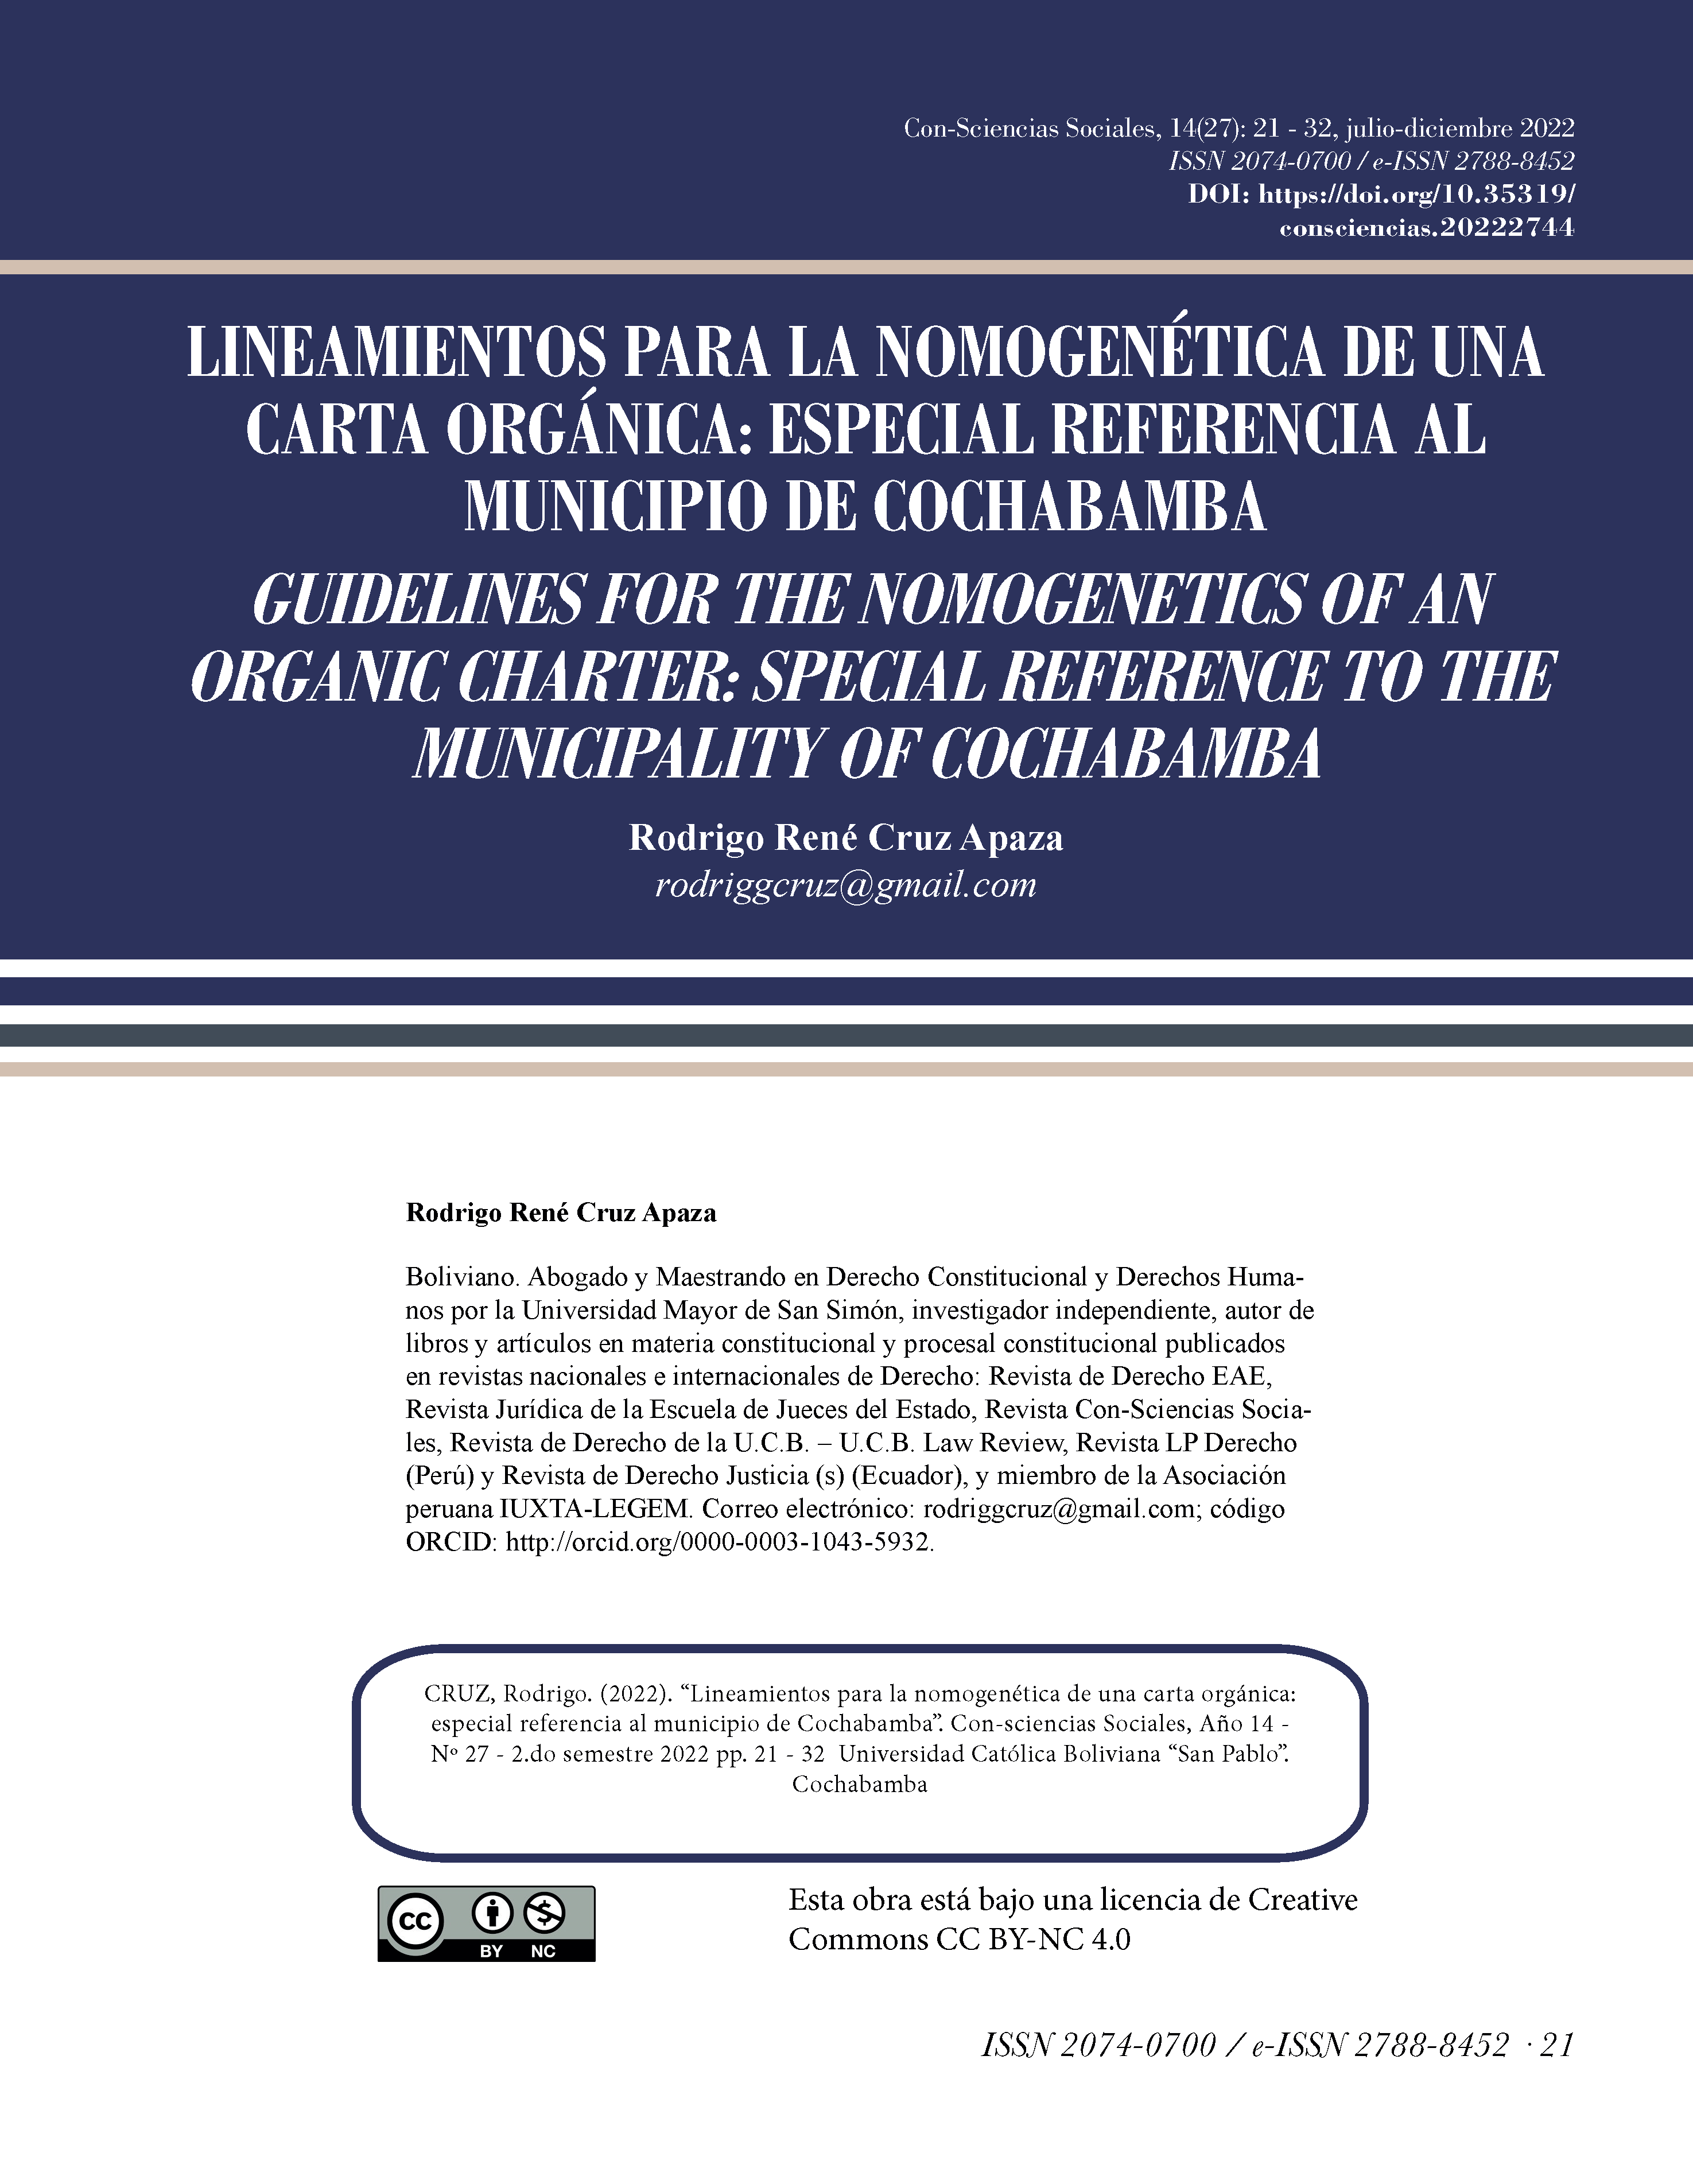 Lineamientos para la nomogenética de una carta orgánica: especial referencia al municipio de Cochabamba